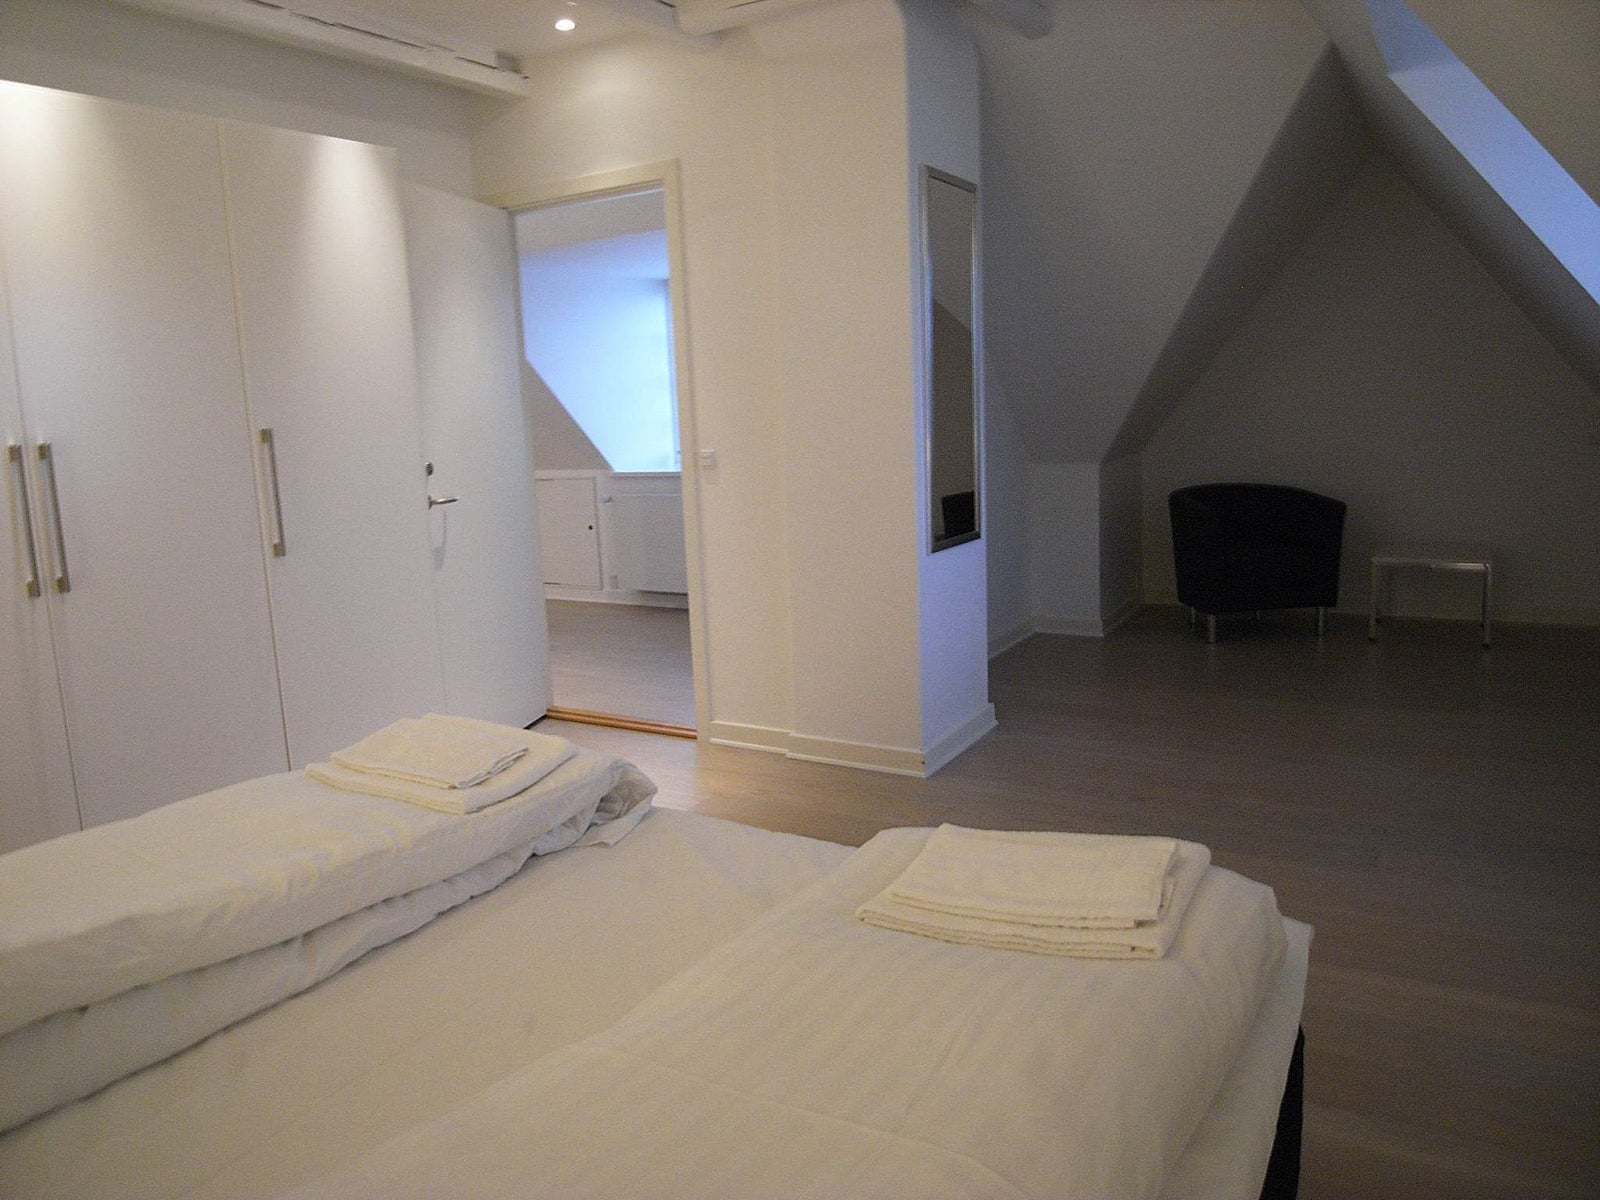 2 værelses lejlighed i Frederiksberg C 1904 på...